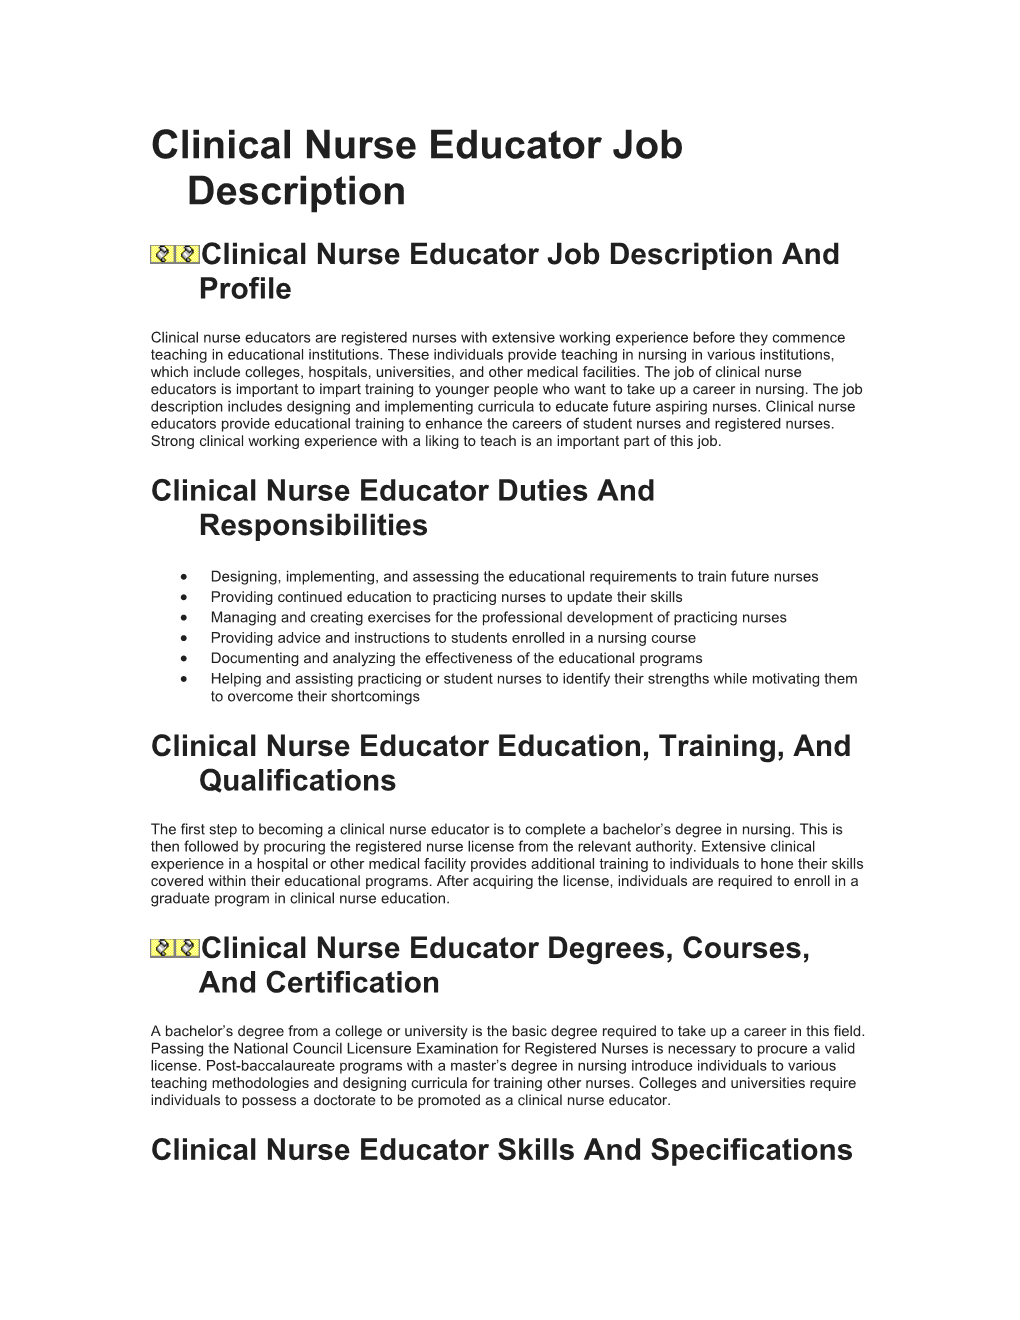 Clinical Nurse Educator Job Description